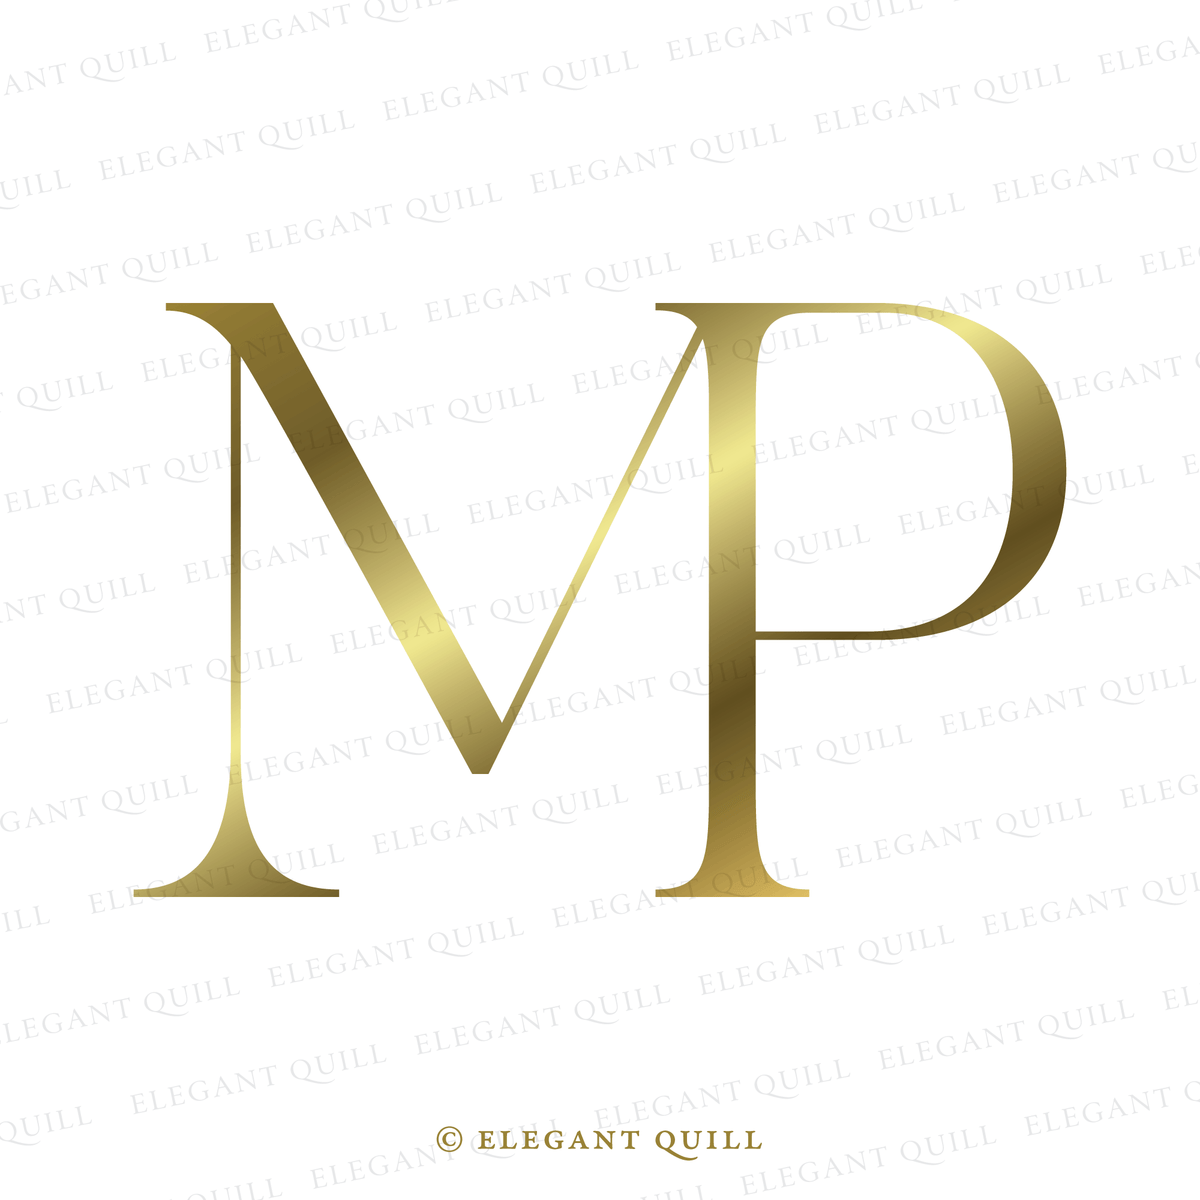 P M modern letter logo design  Letter logo design, Monogram logo